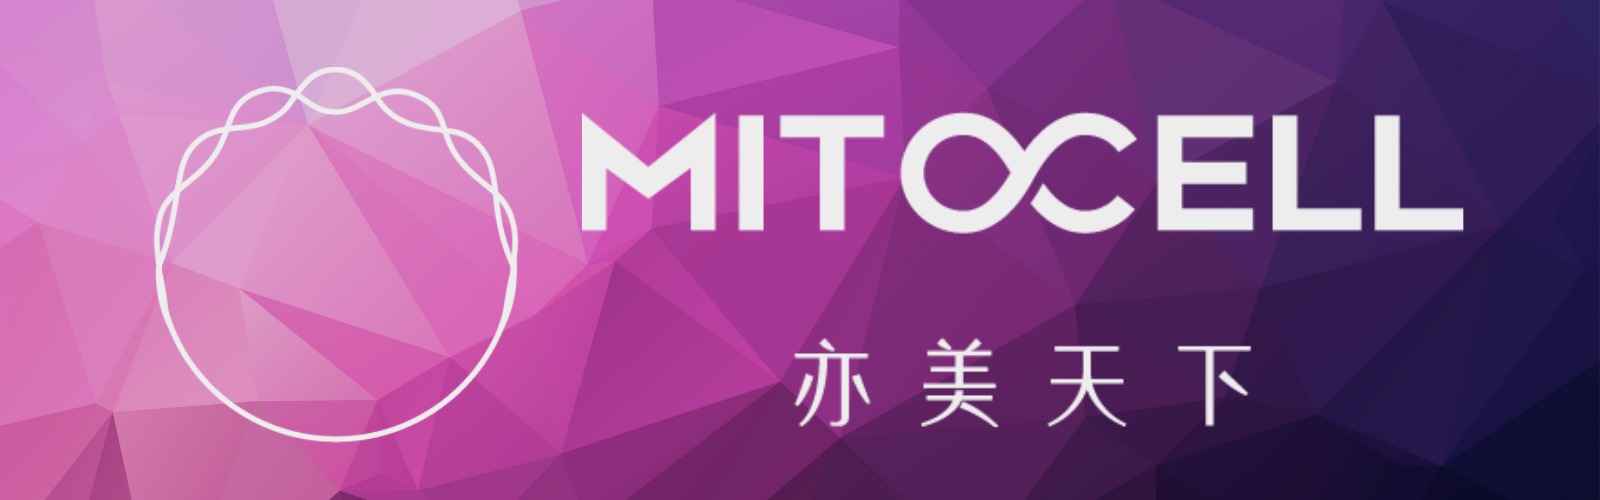 亦美天下(香港)有限公司 Mitocell.hk